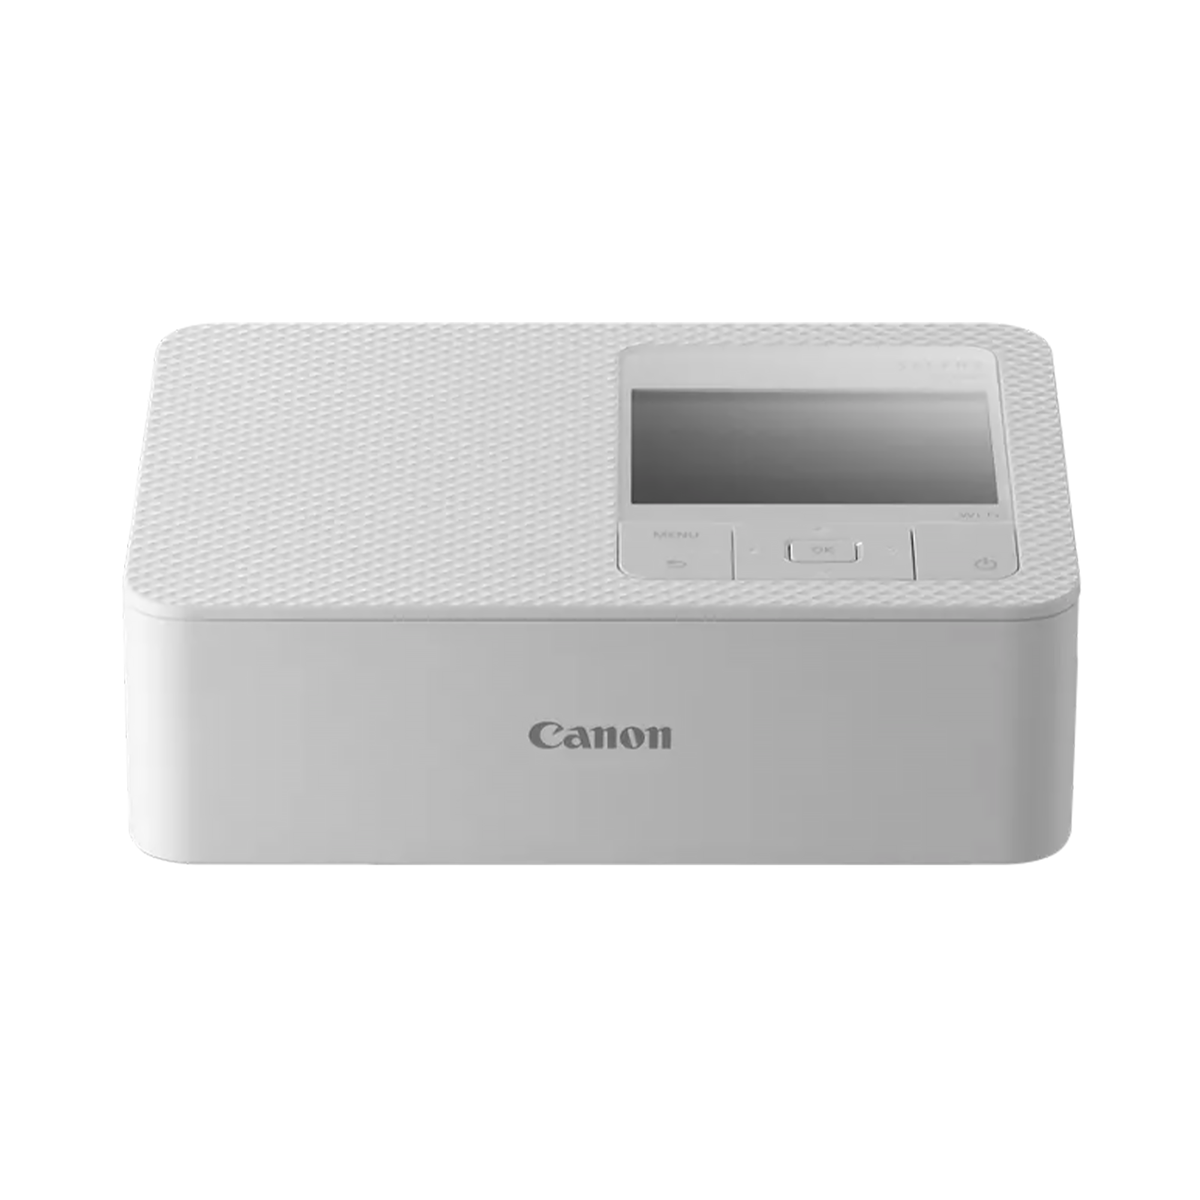 Canon Selphy CP1500 Wireless Compact Photo Printer - White — Glazer's Camera